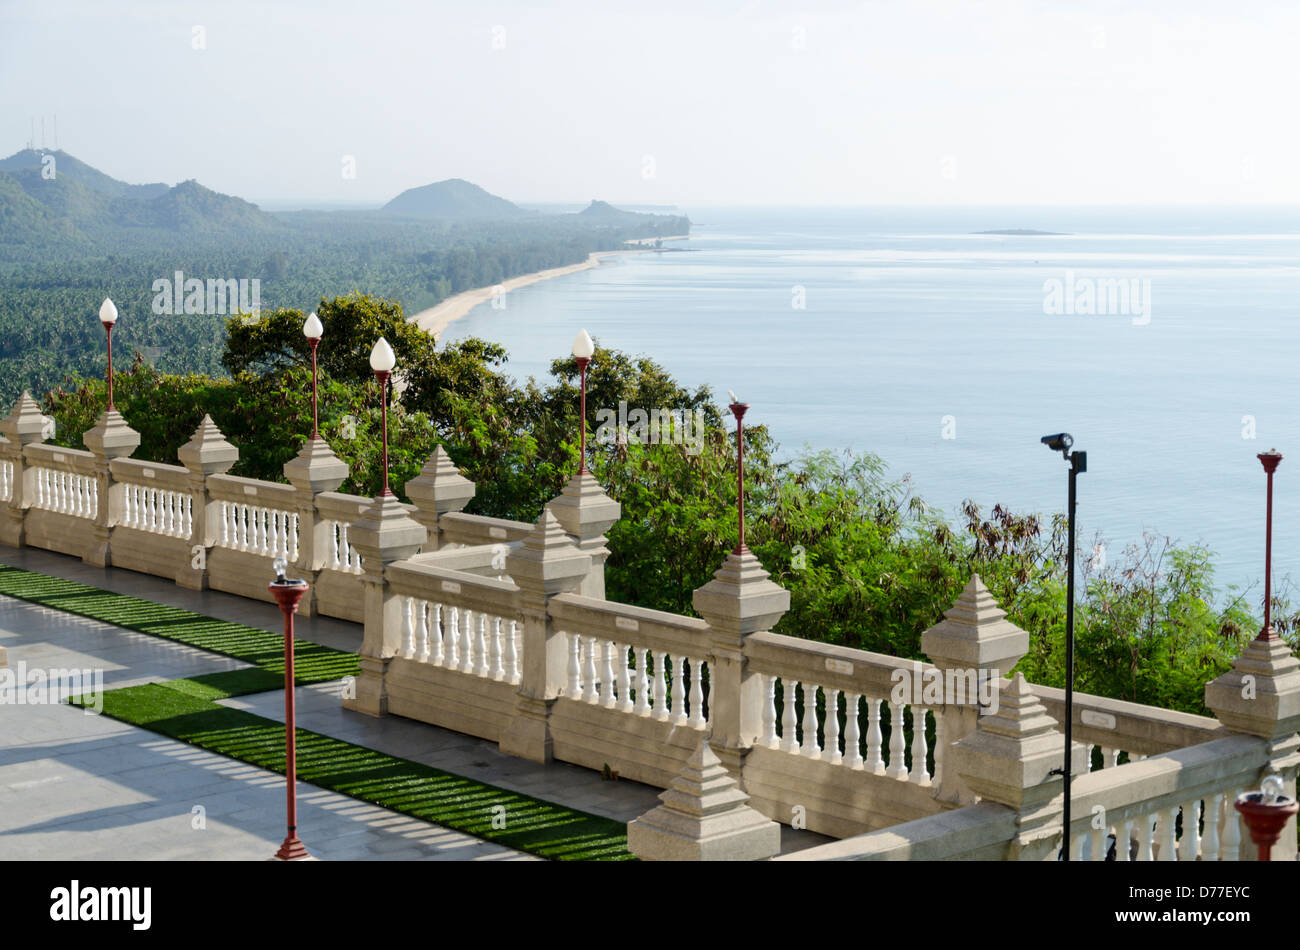 Grande terrasse en marbre d'un palais de Wat Tang Sai sur le dessus de la montagne au-dessus du Chai Khao Tong Krut Interdiction beach dans le sud de la Thaïlande Banque D'Images